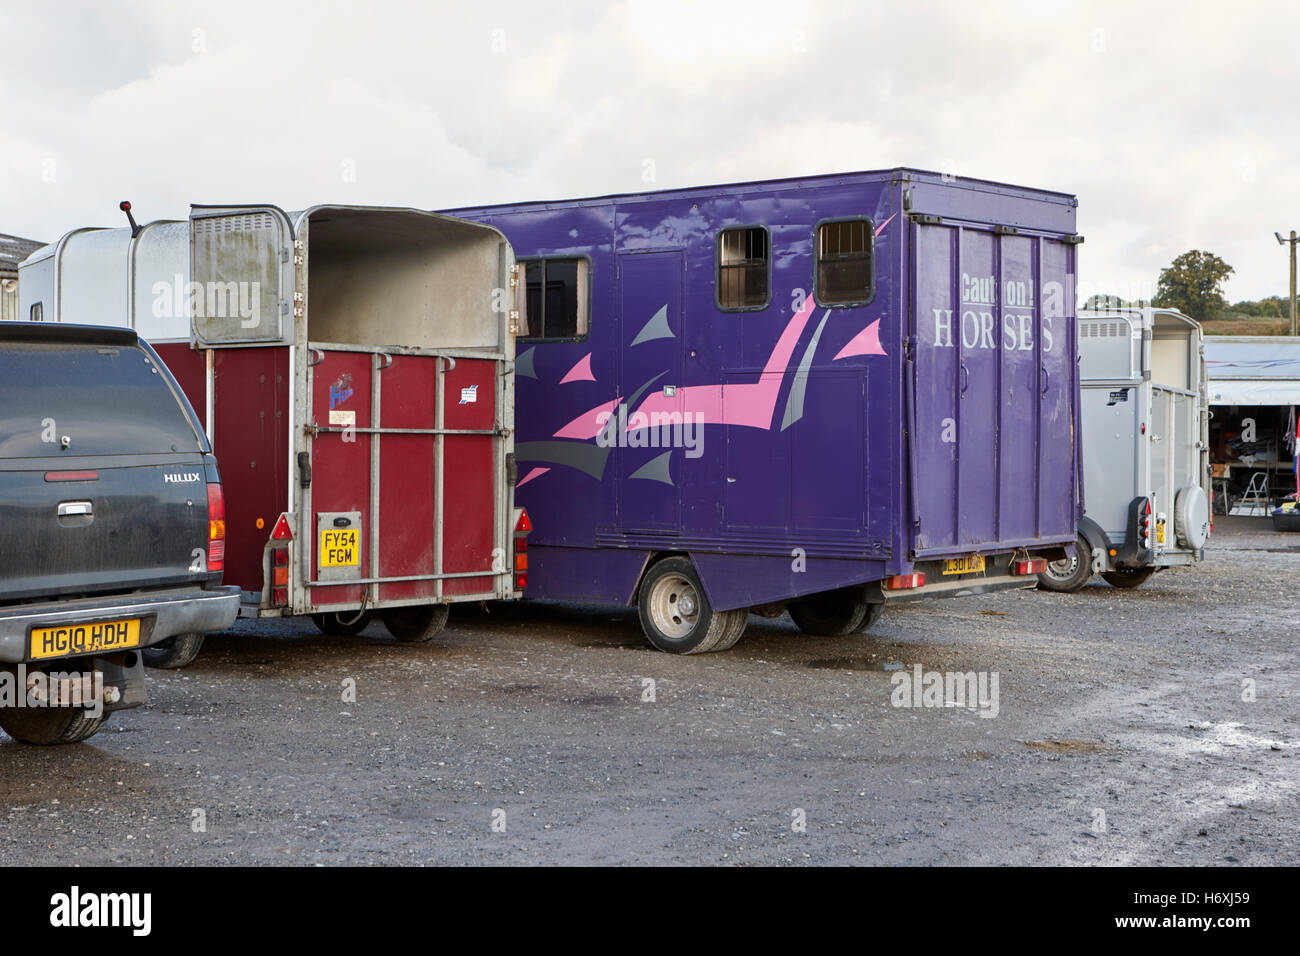 Les véhicules de transport de chevaux au marché de beeston england uk Banque D'Images